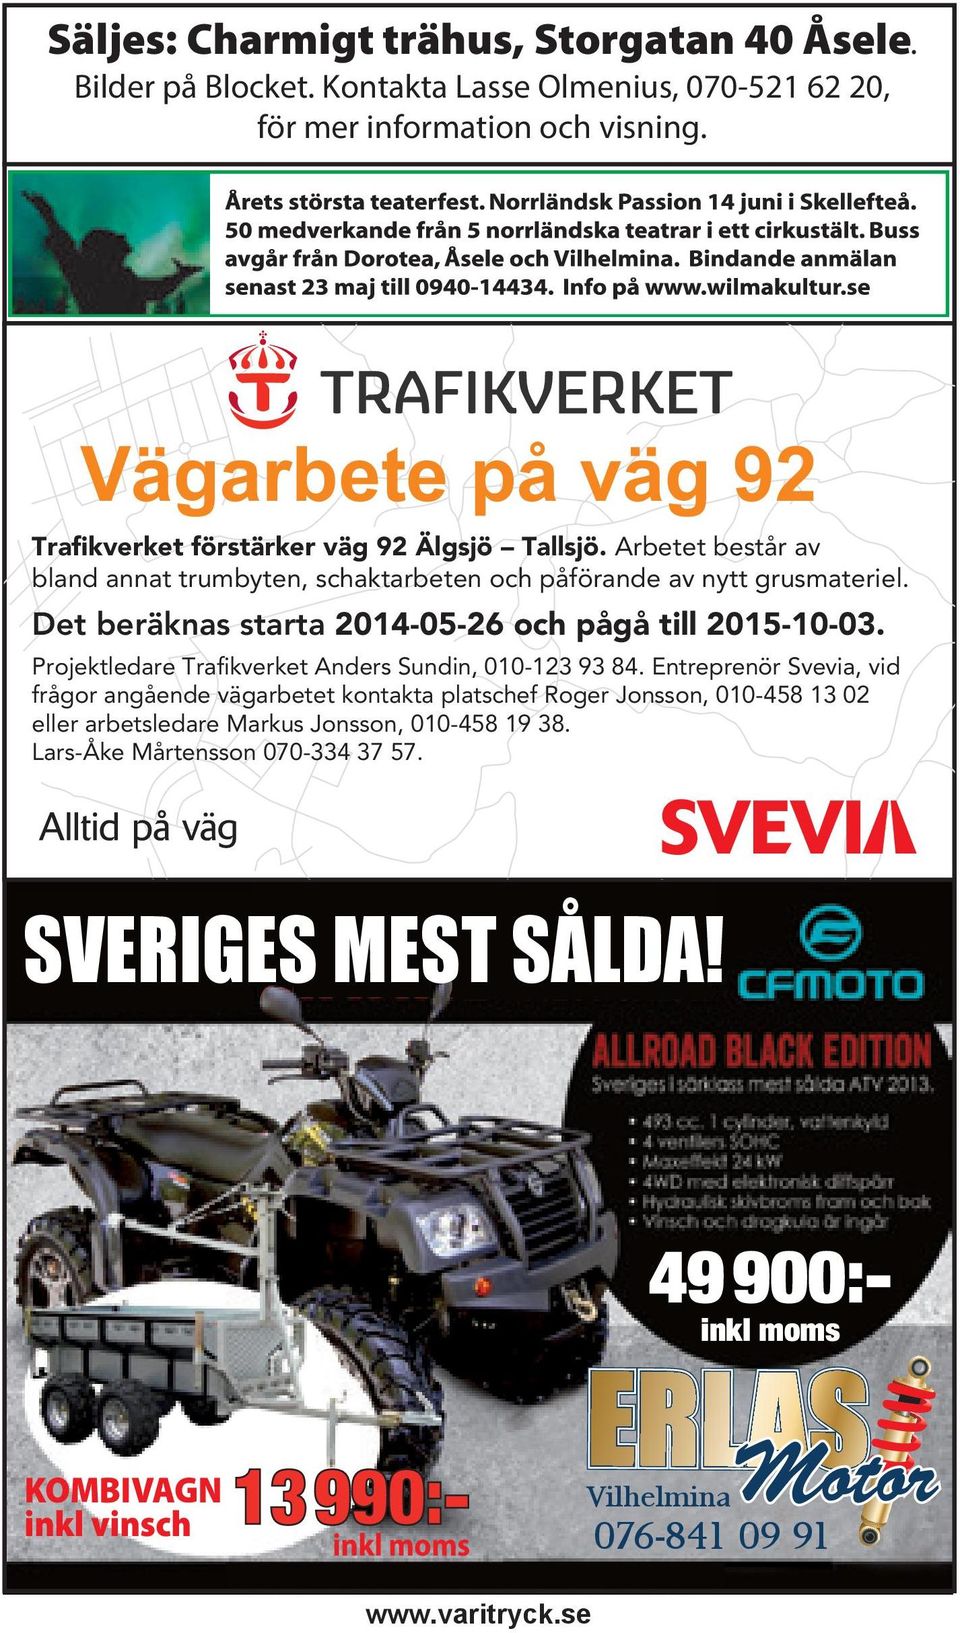 Det beräknas starta 2014-05-26 och pågå till 2015-10-03. Projektledare Trafikverket Anders Sundin, 010-123 93 84.